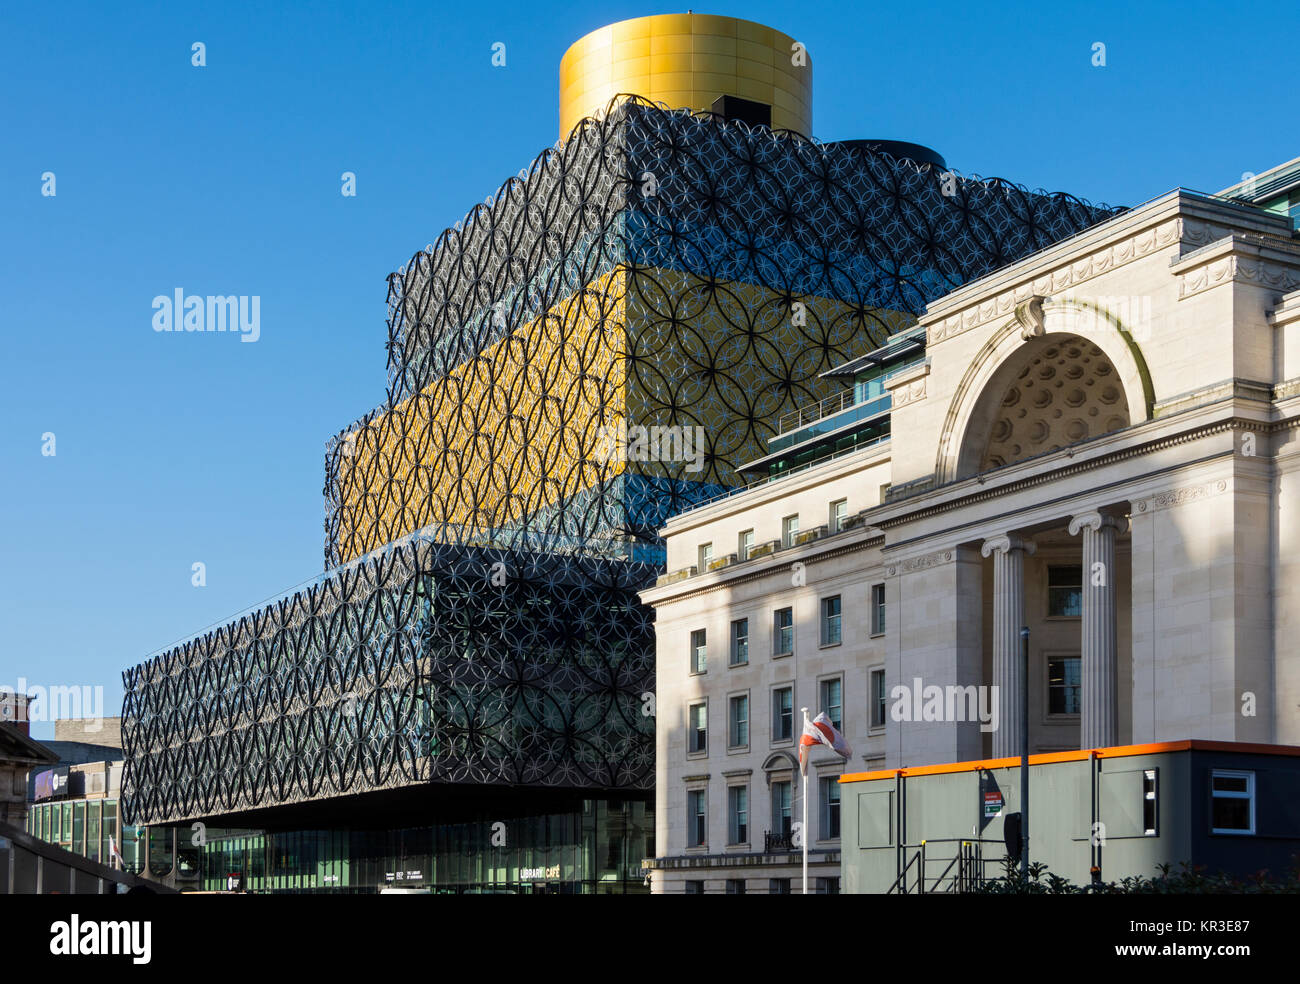 Die Bibliothek von Birmingham Gebäude (Mecanoo 2013), und die Baskerville Gebäude (T. Cecil Howitt 1938), Centenary Square, Birmingham, England, Großbritannien Stockfoto